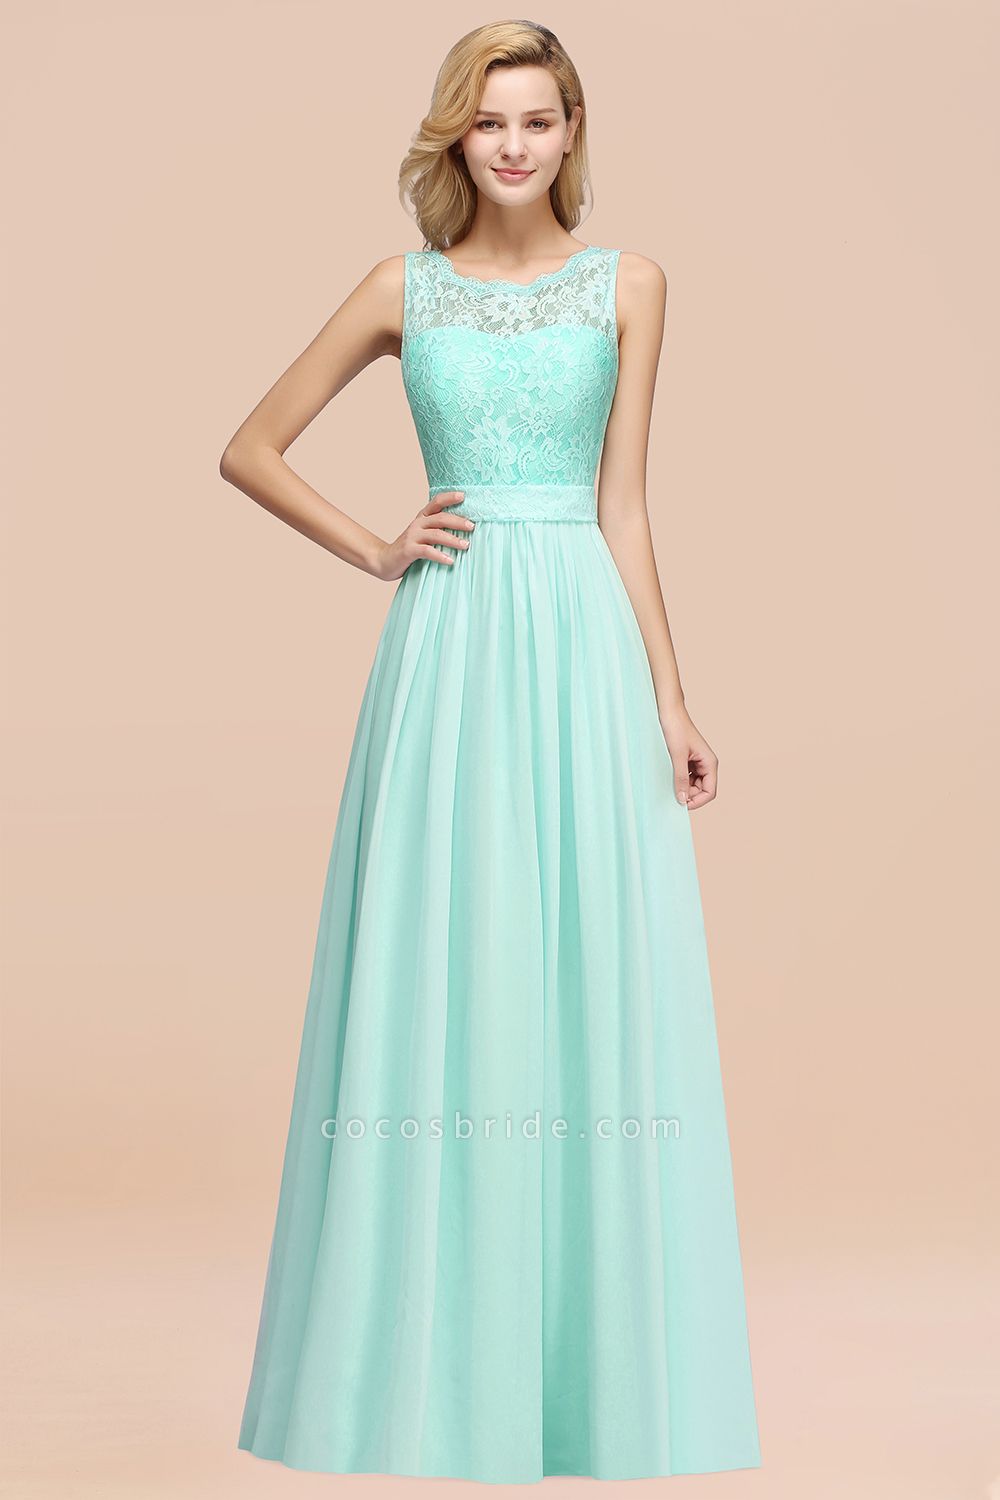 BM0834 Chiffon A-Line Lace Scalloped Sleeveless Long Ruffles Bridesmaid Dress